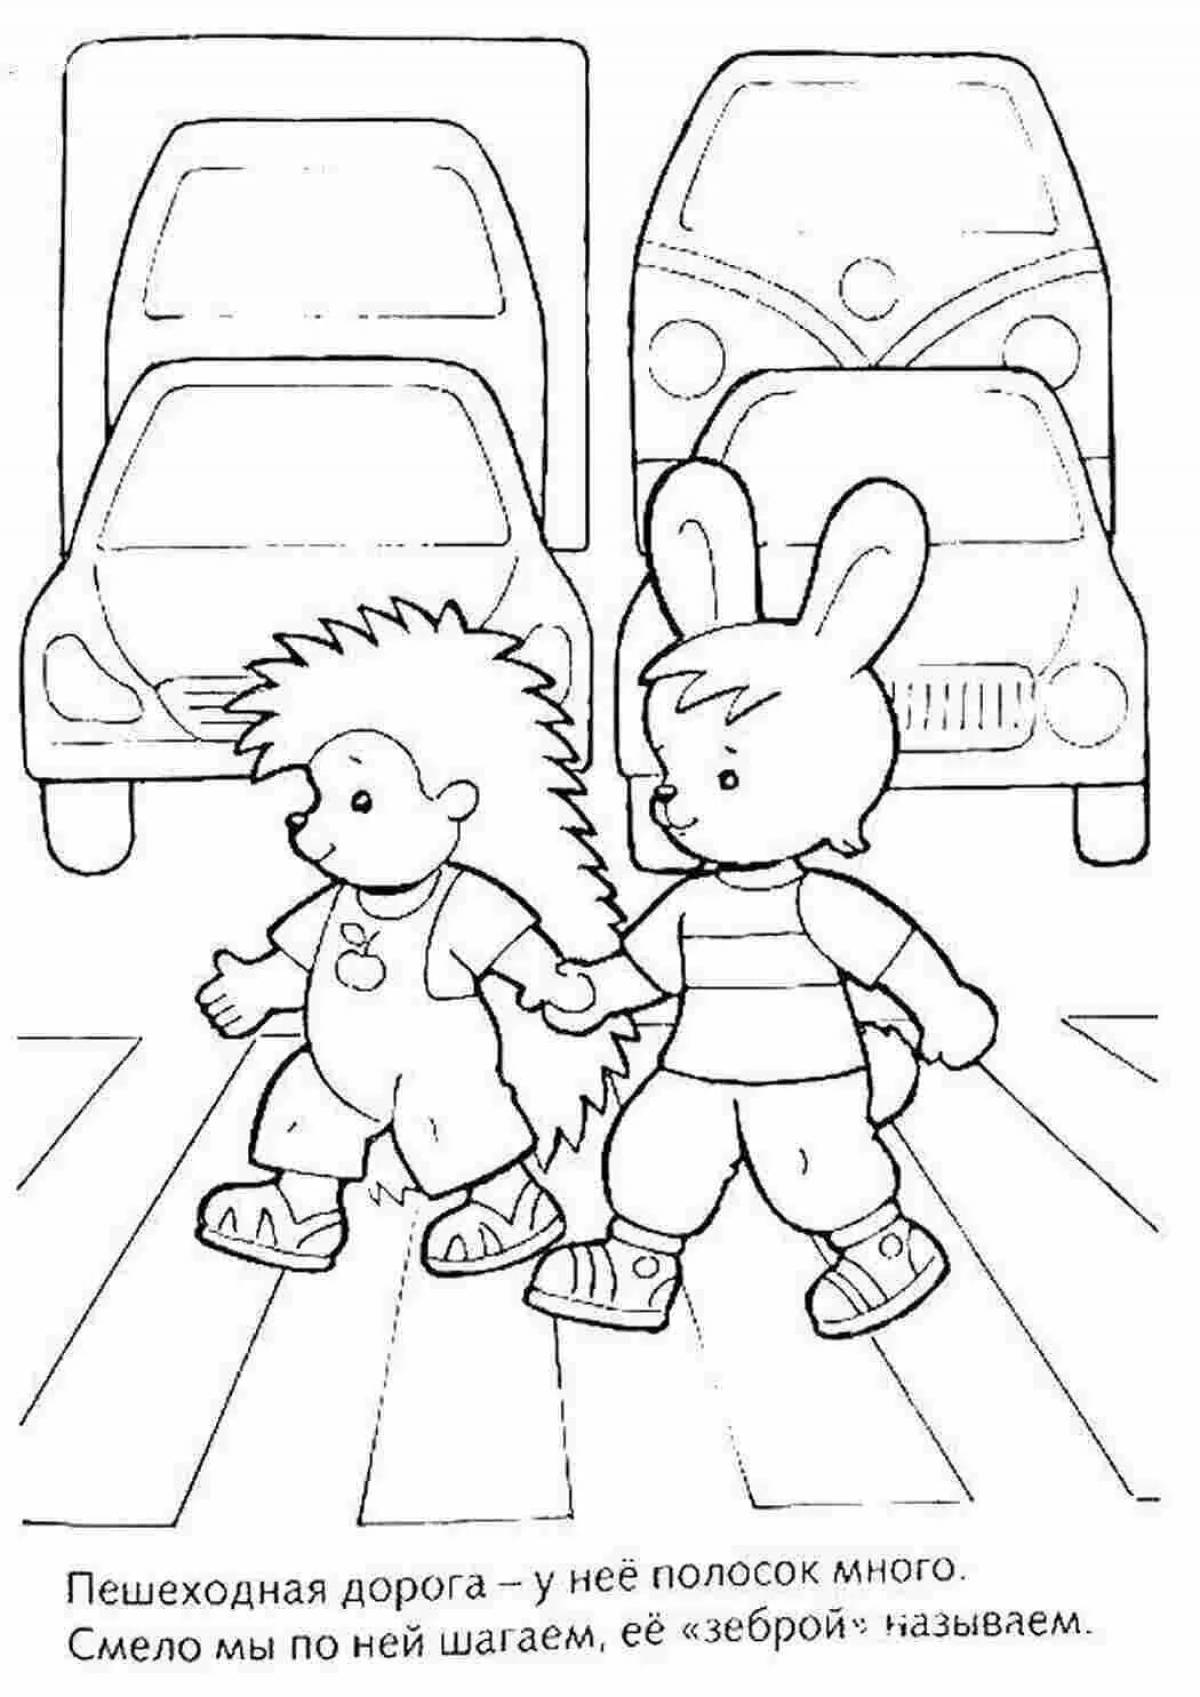 На тему правила дорожного движения для детского сада #15